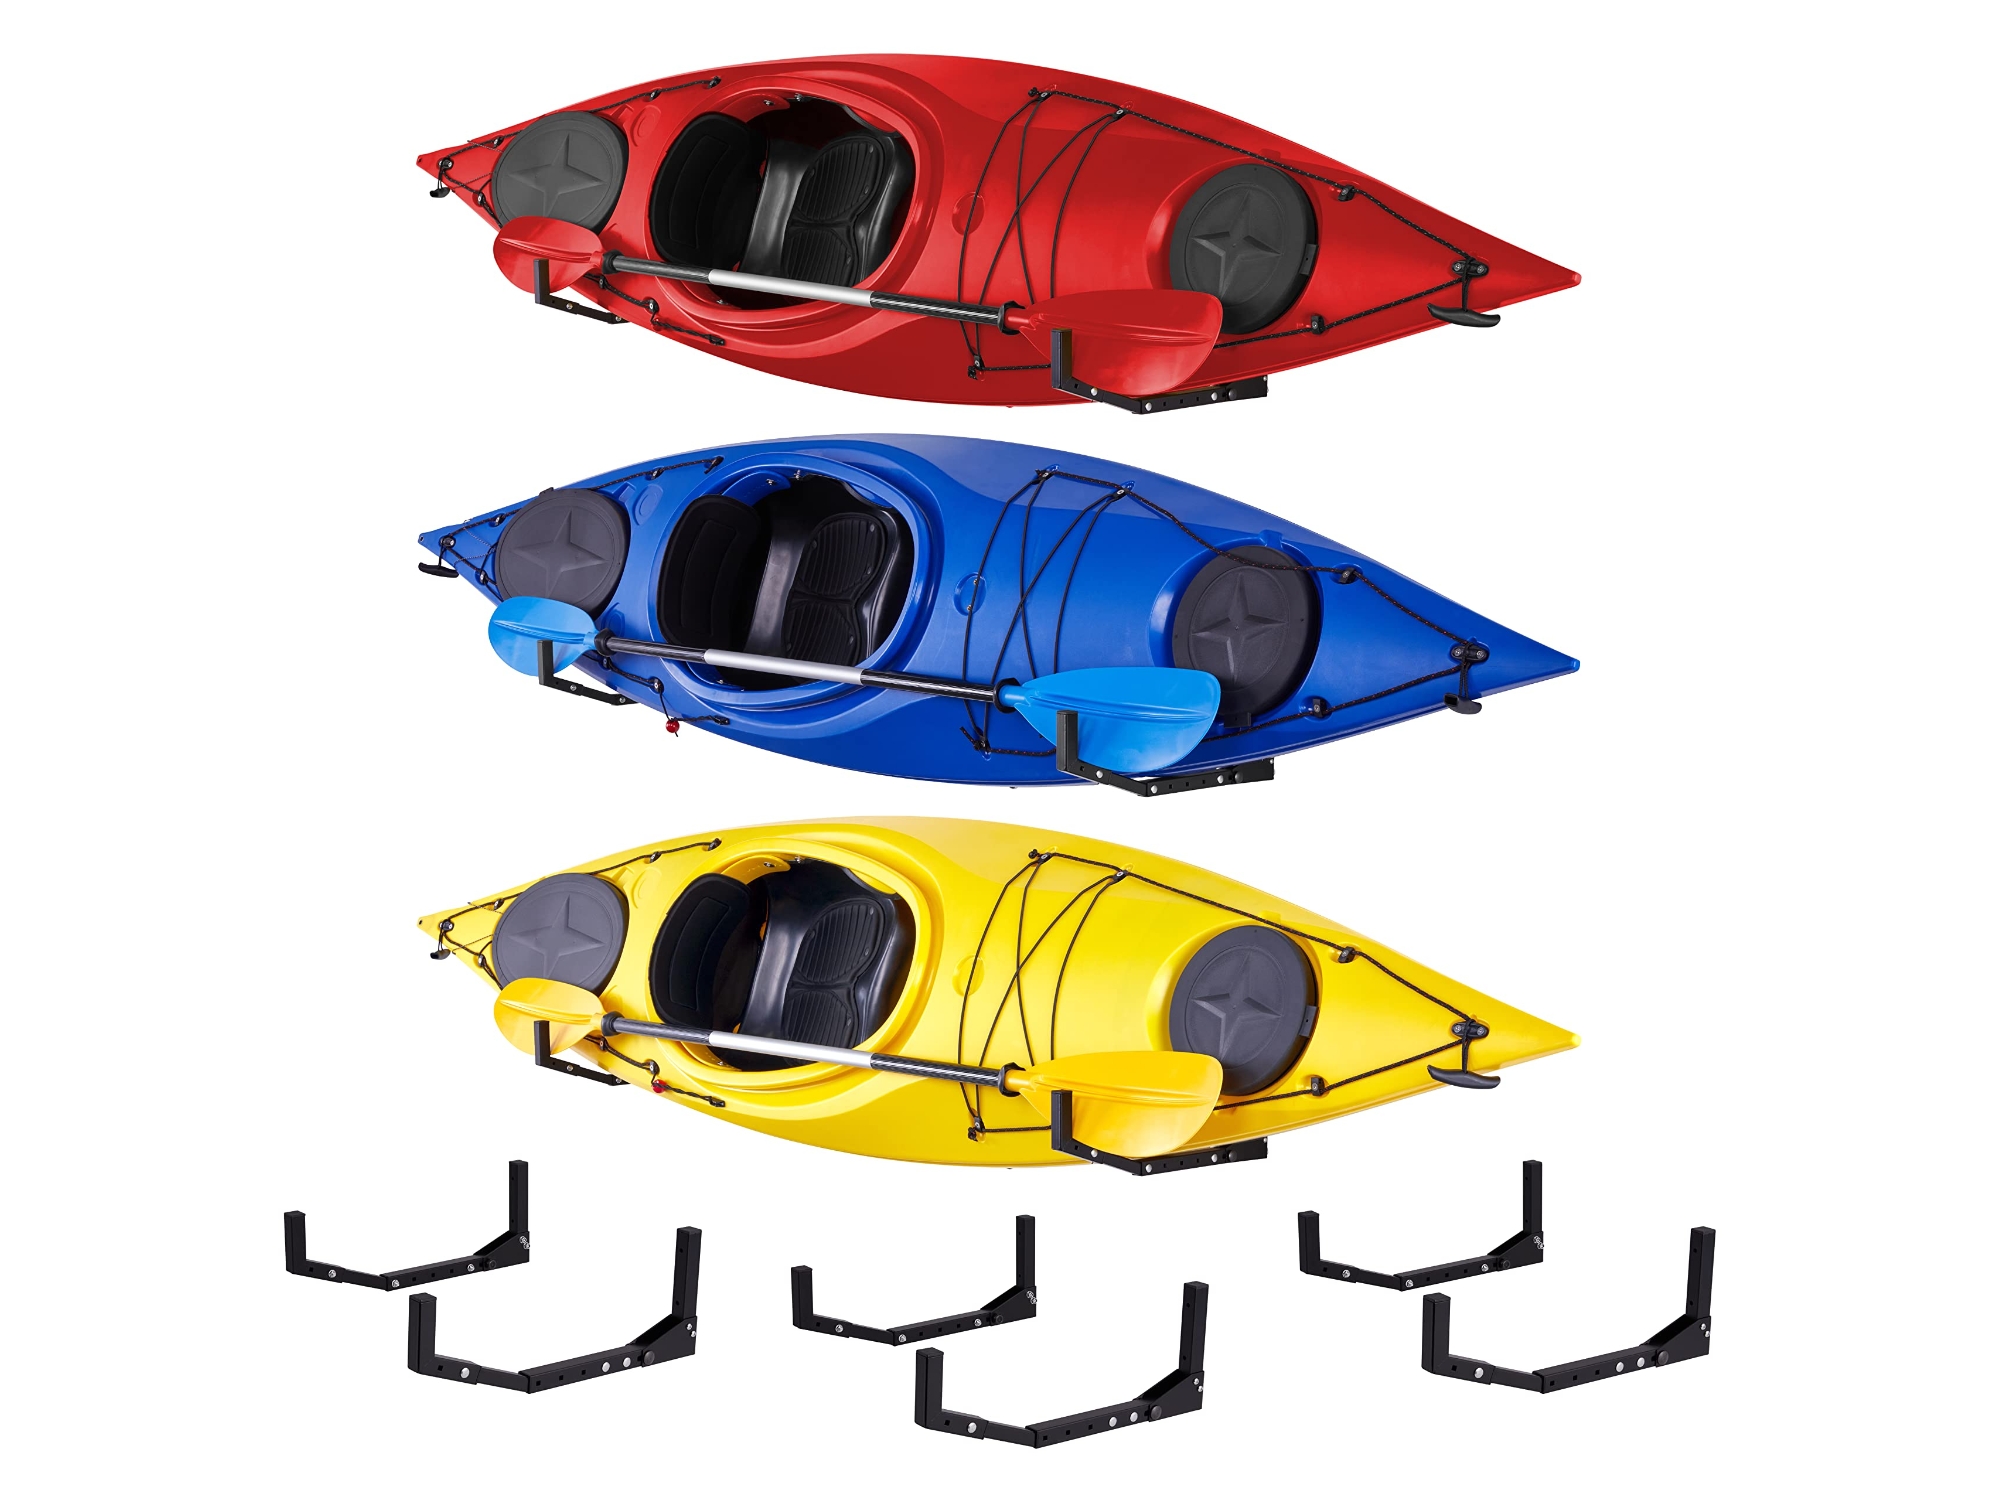 Image of RaxGo Kayak Wall Hanger Heavy Duty Wall Mounted Kayak Rack - 3 Sets ID 843812169257